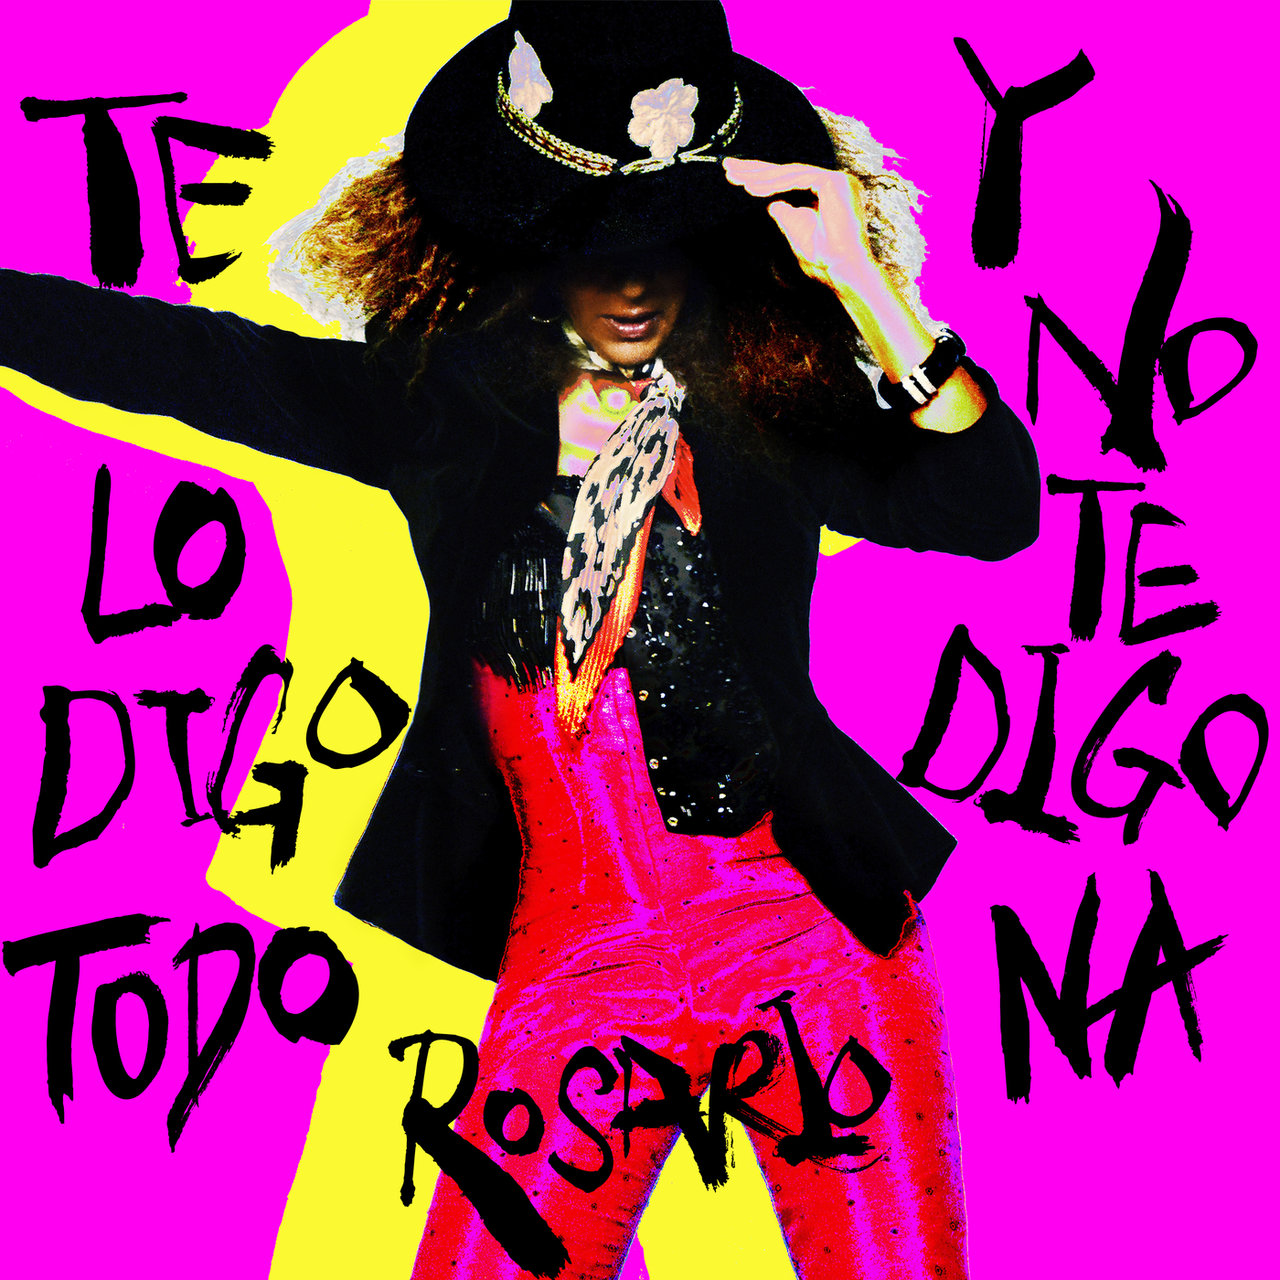 Rosario — Te Lo Digo Todo Y No Te Digo Na cover artwork